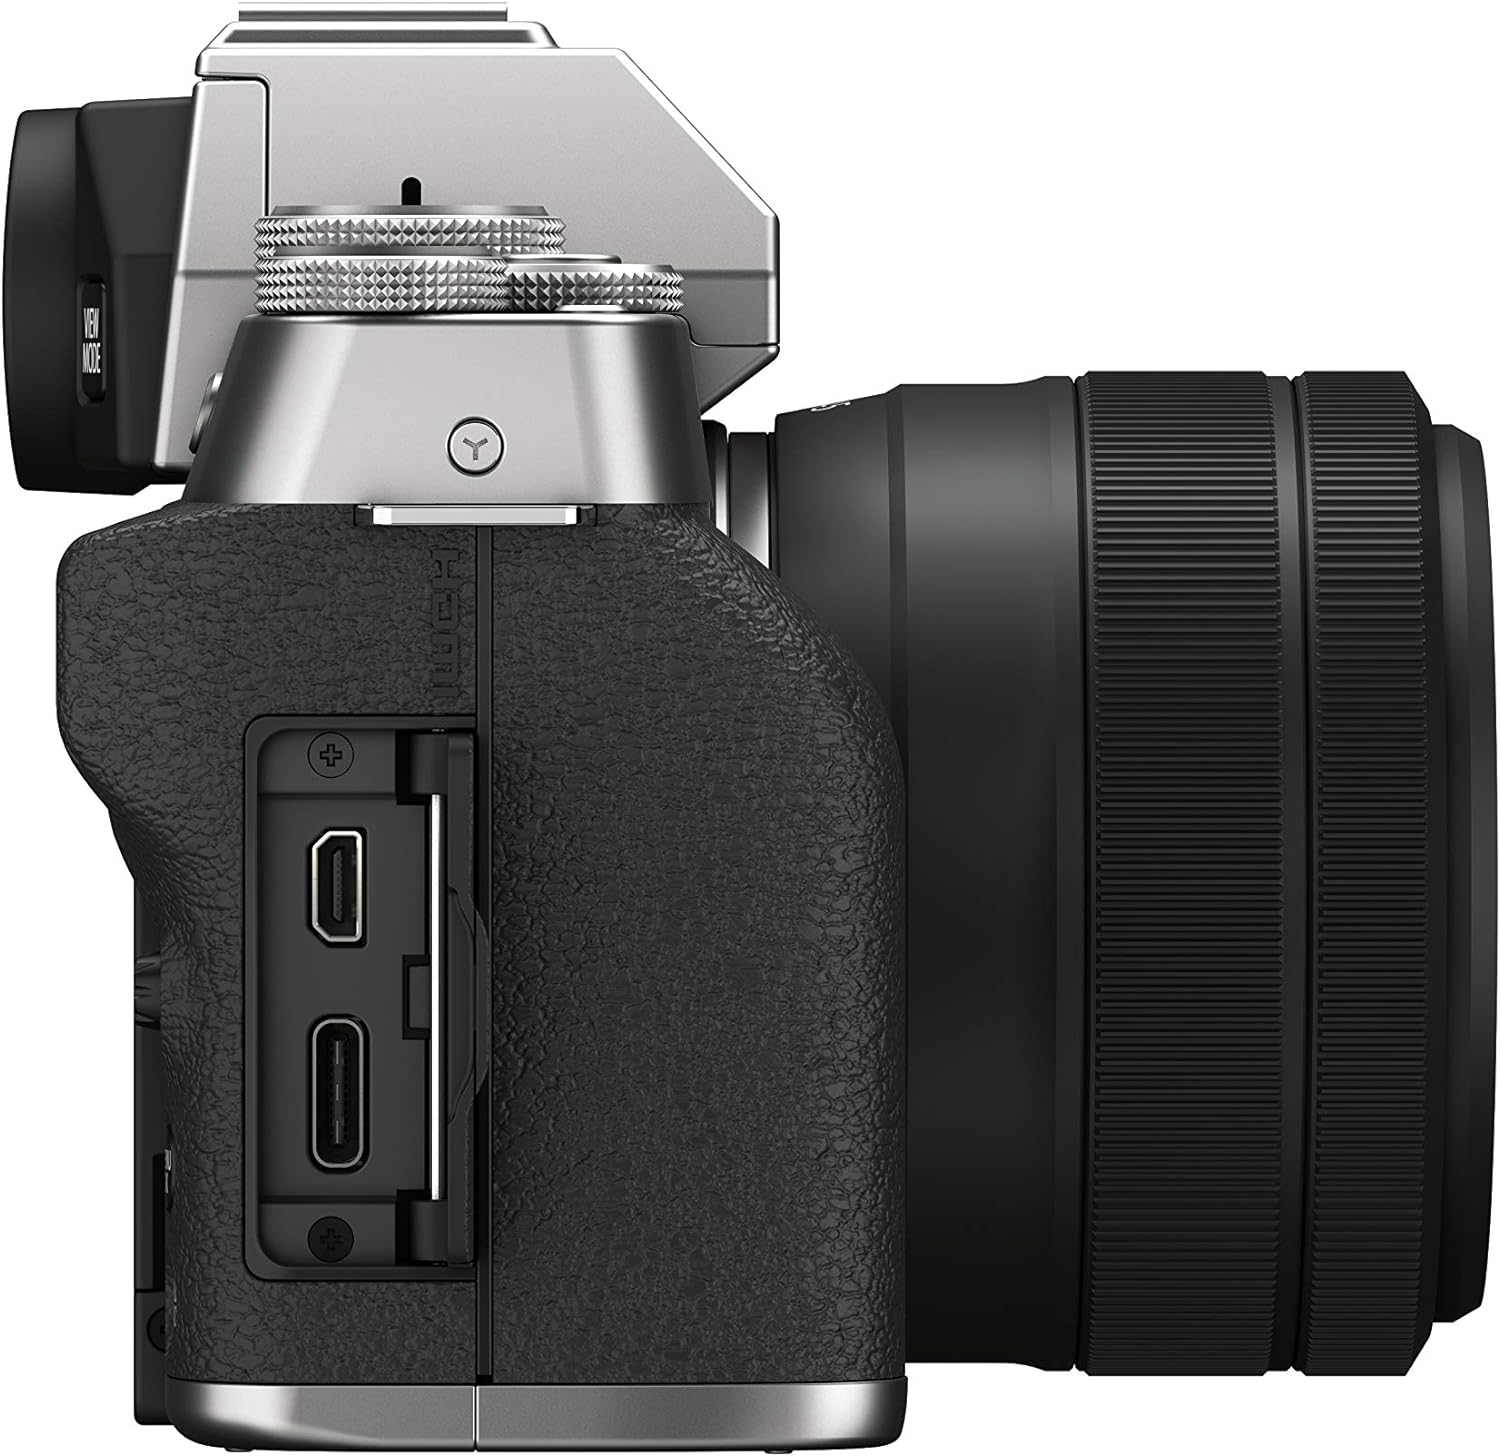 Fujifilm X-T200 Mirrorless Digital Camera - Dark Silver